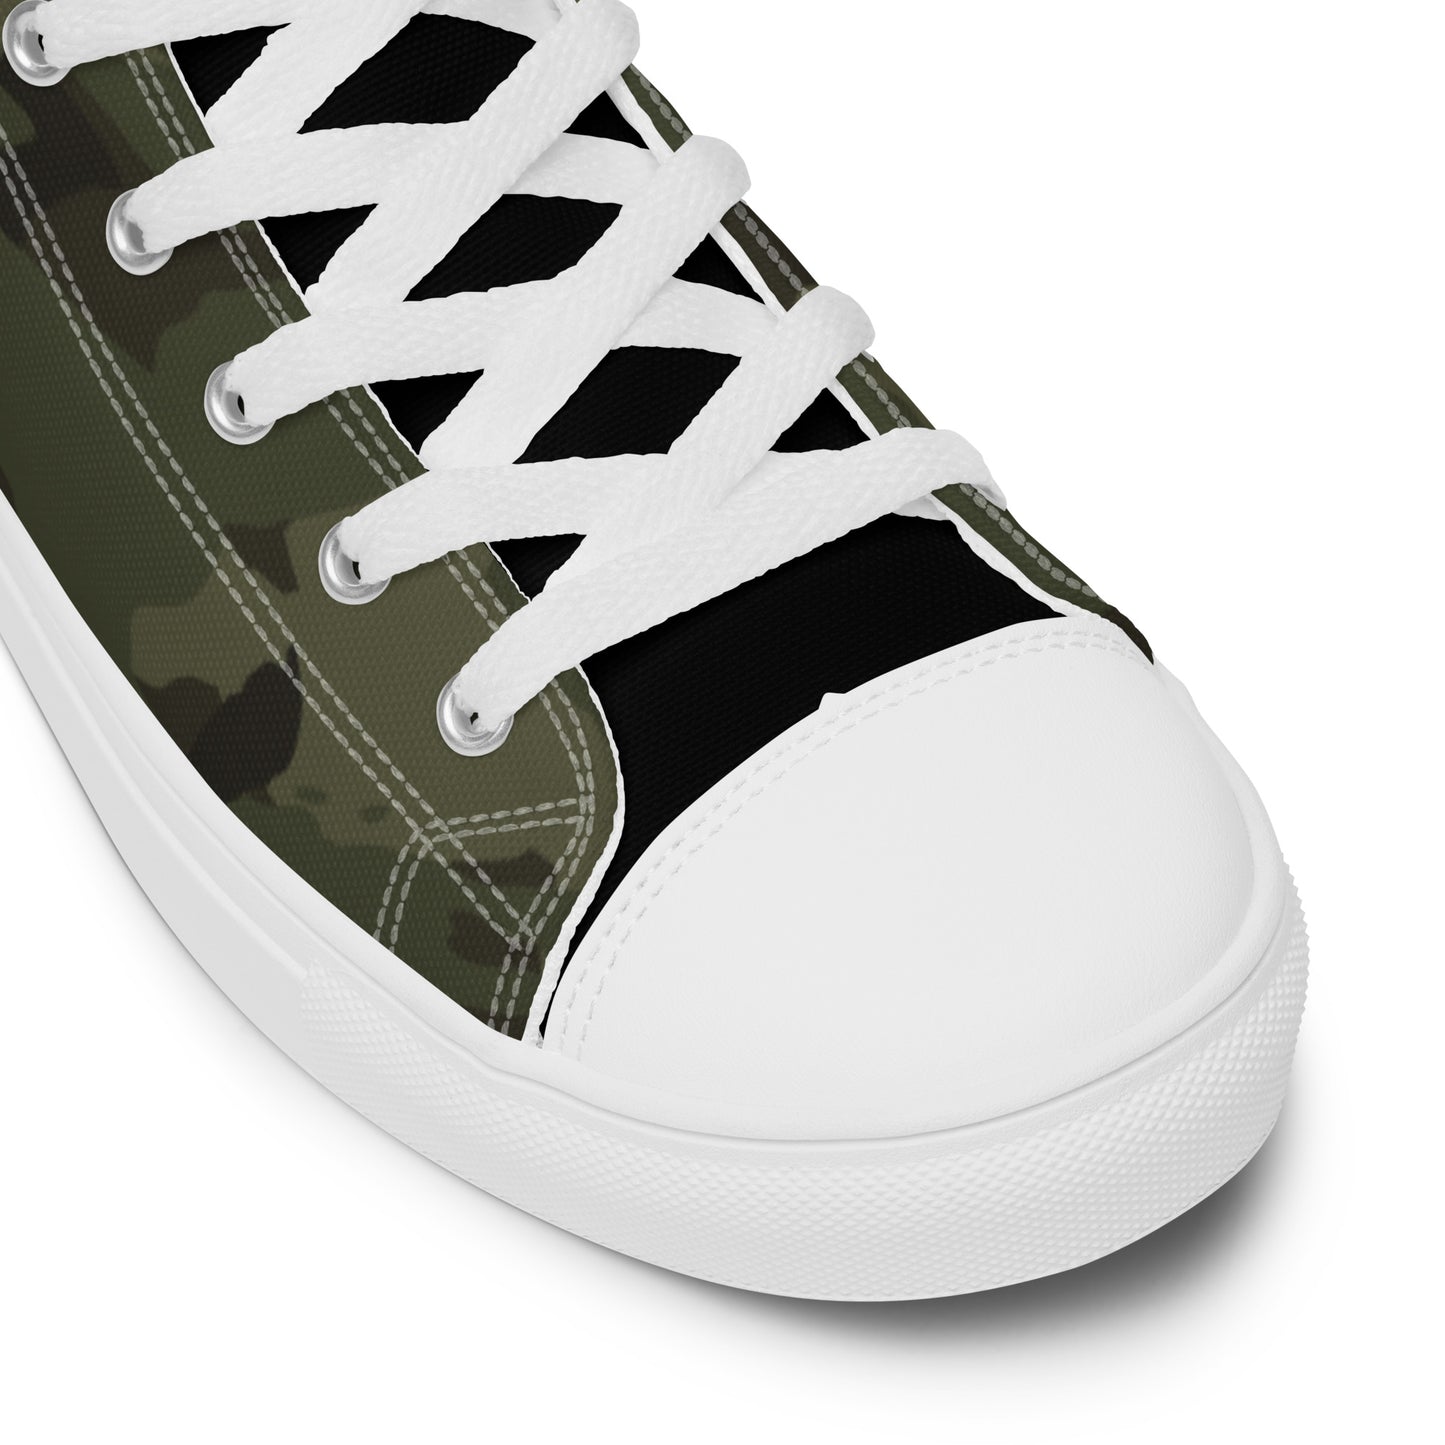 Men’s Army Camo High Top Canvas Shoes